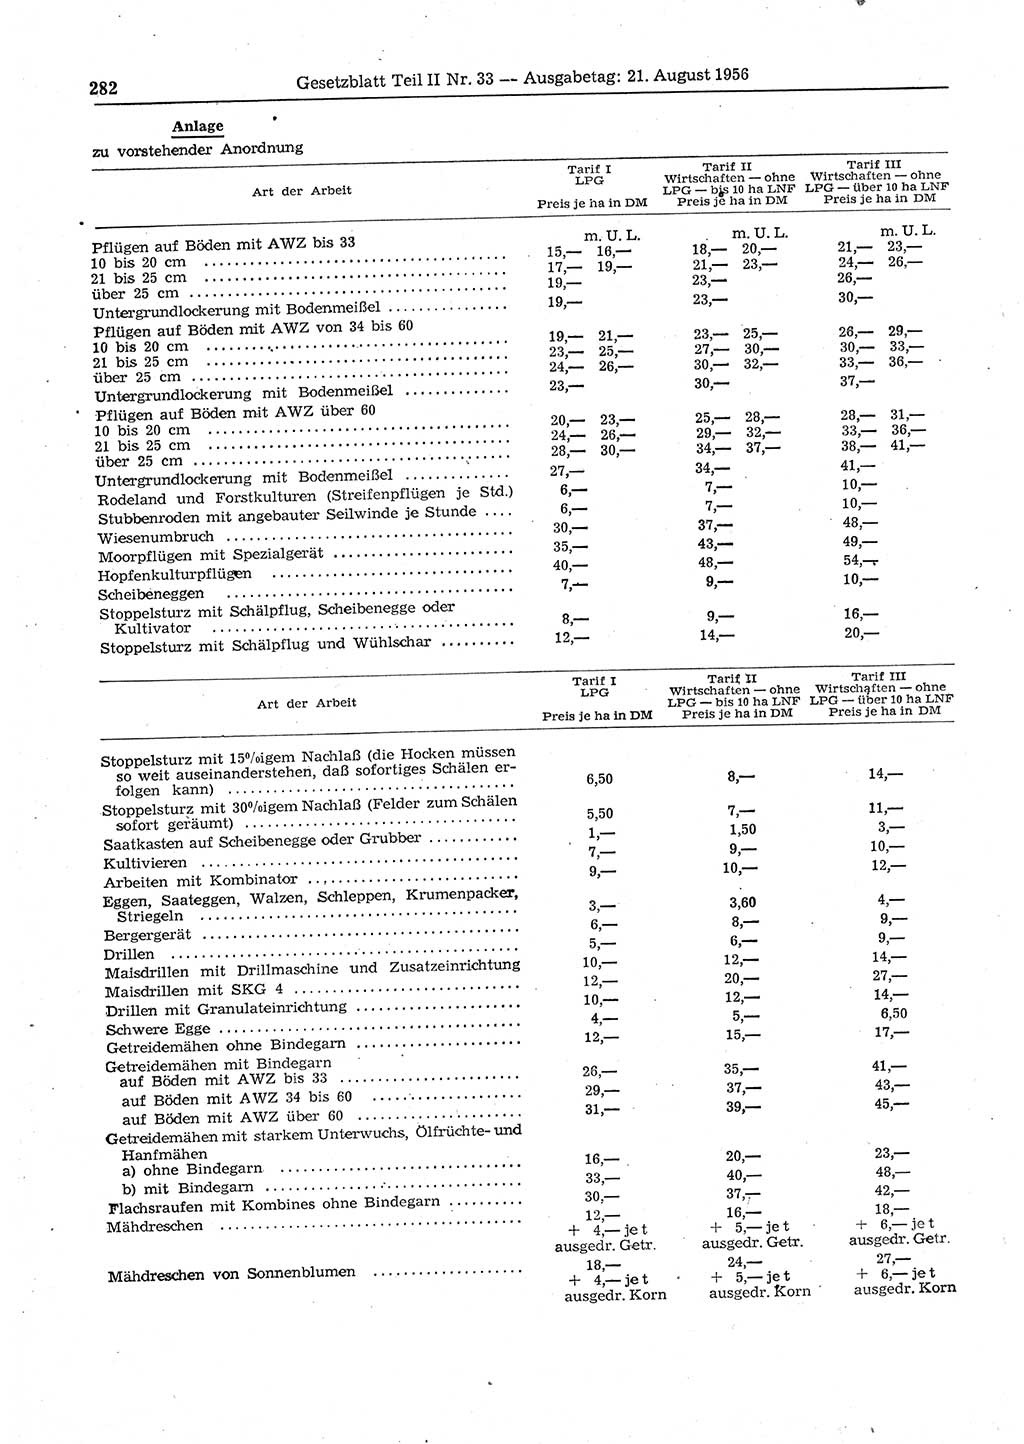 Gesetzblatt (GBl.) der Deutschen Demokratischen Republik (DDR) Teil ⅠⅠ 1956, Seite 282 (GBl. DDR ⅠⅠ 1956, S. 282)